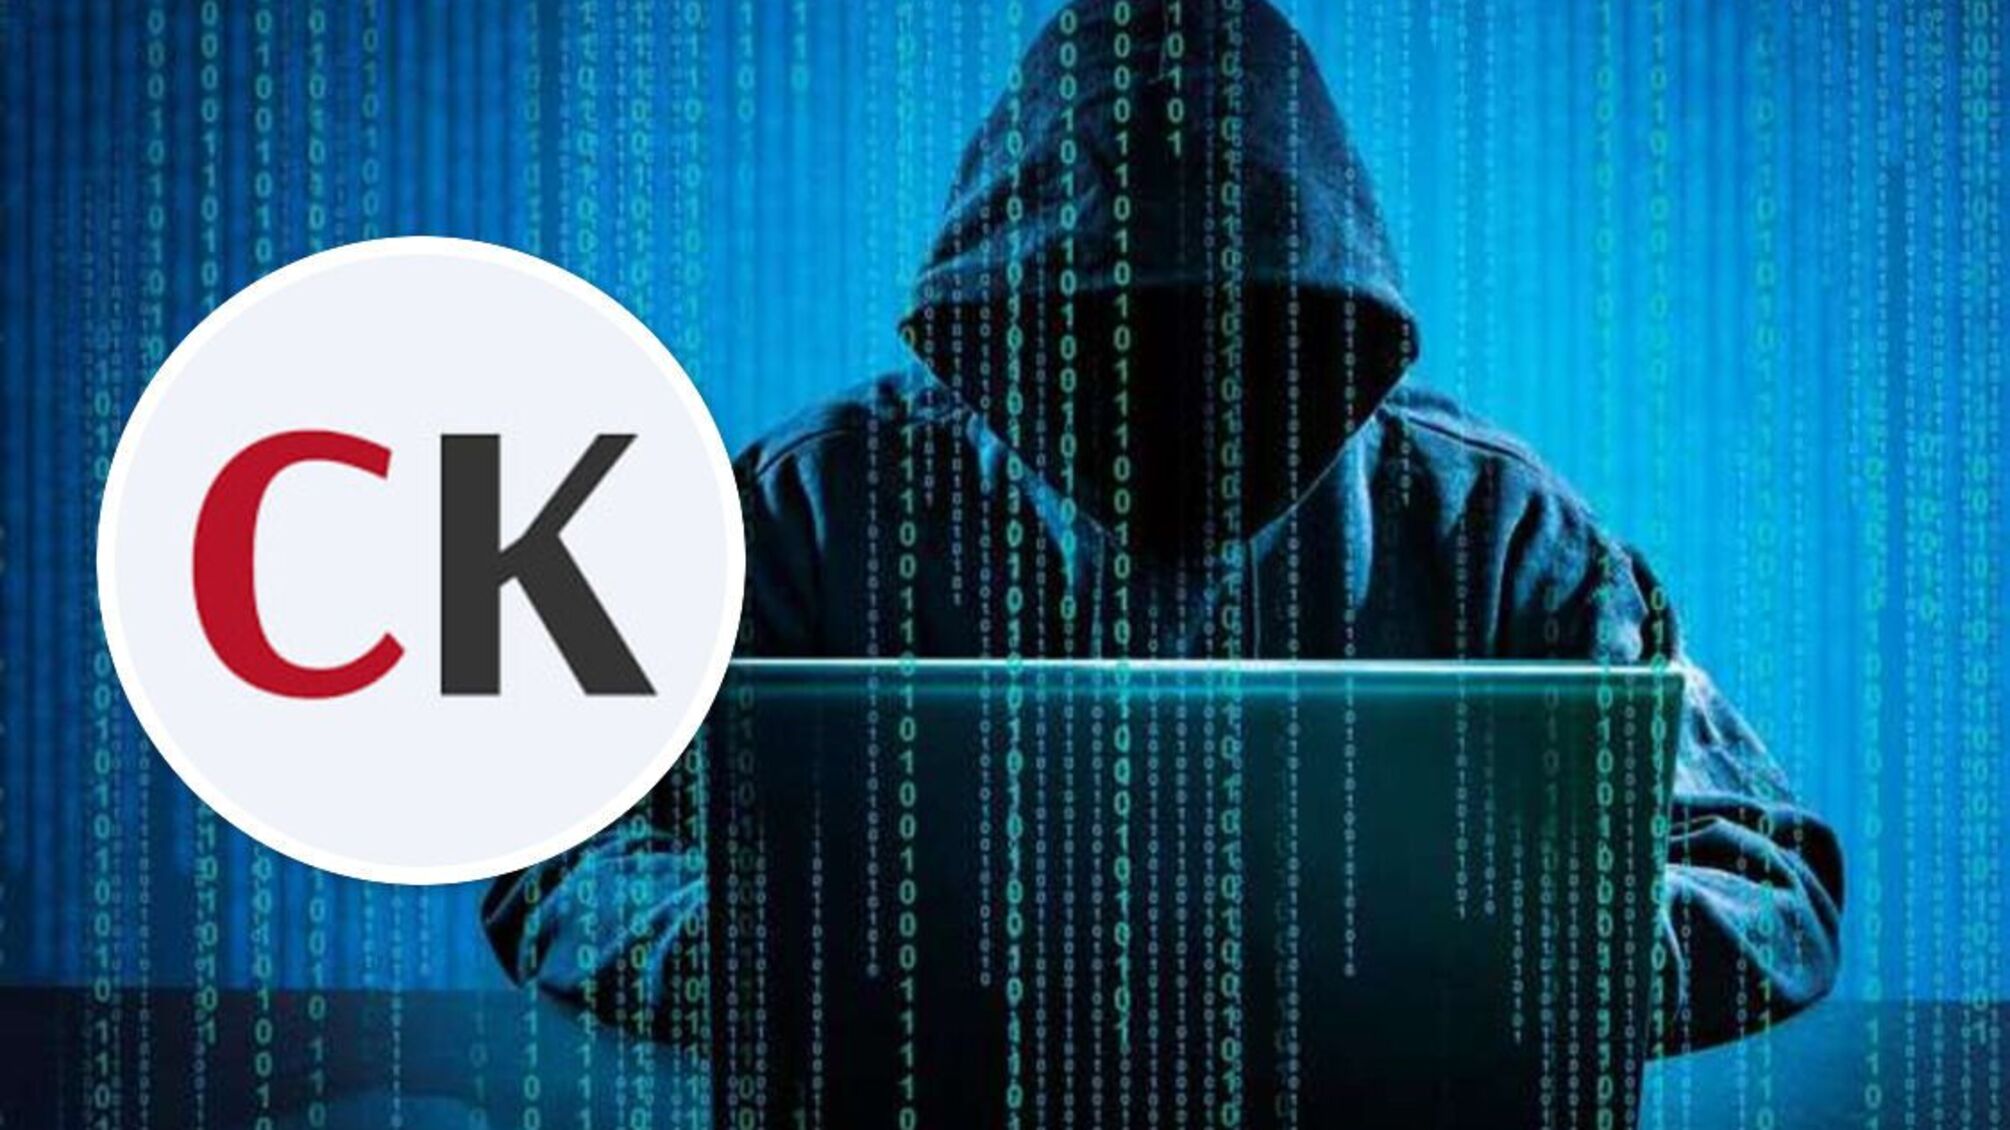 Інформаційний напад на ЗМІ: 'СтопКор' зазнав потужної хакерської атаки